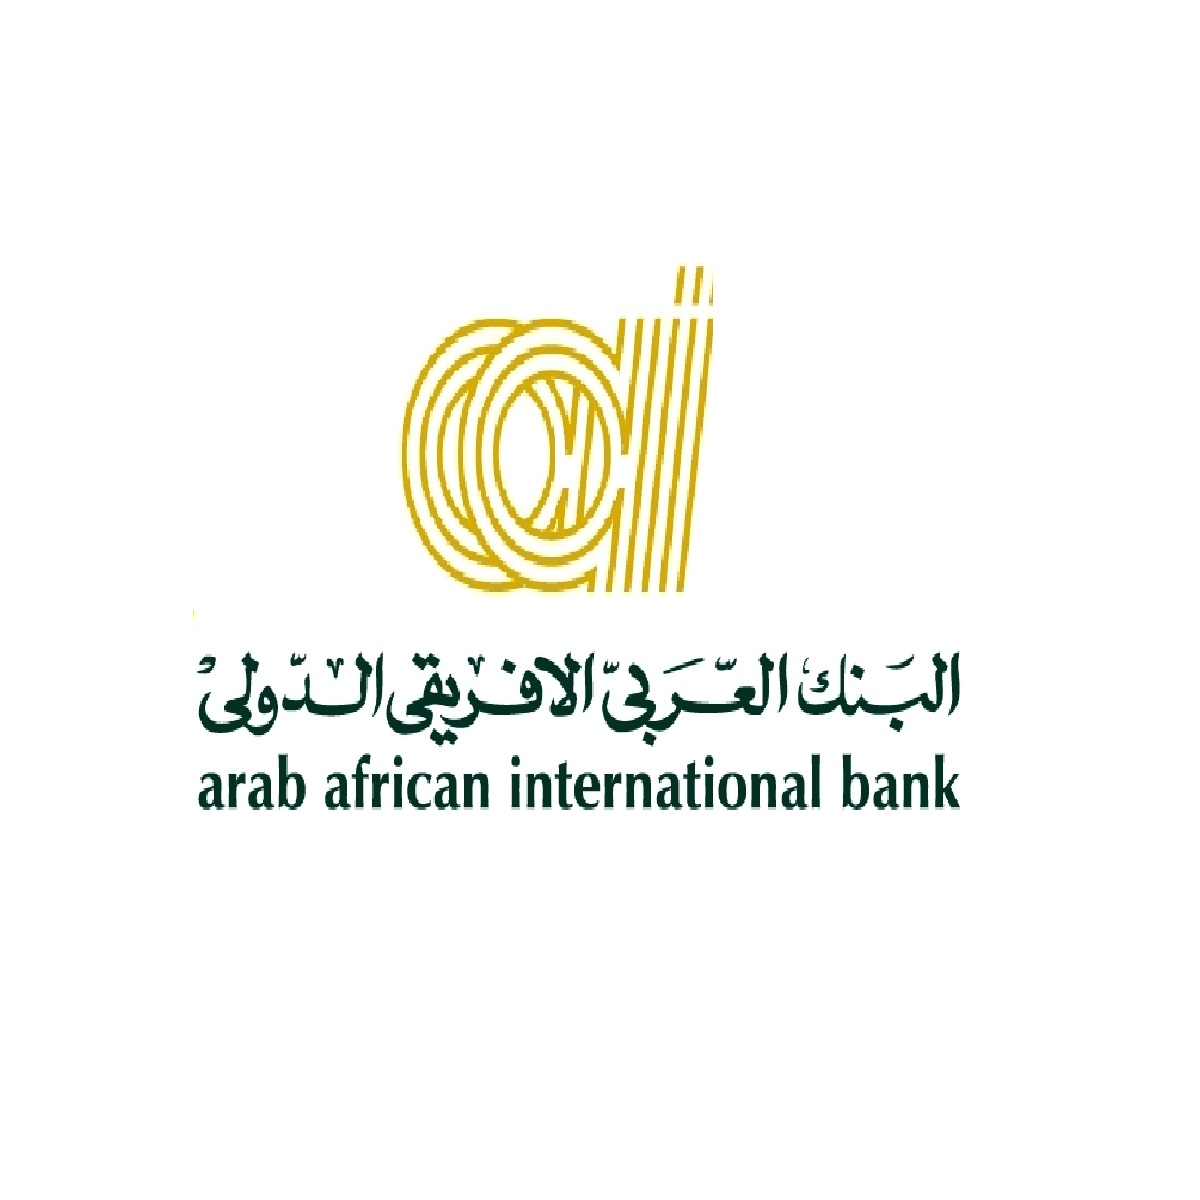 البنك العربي الأفريقي الدولي AAIB